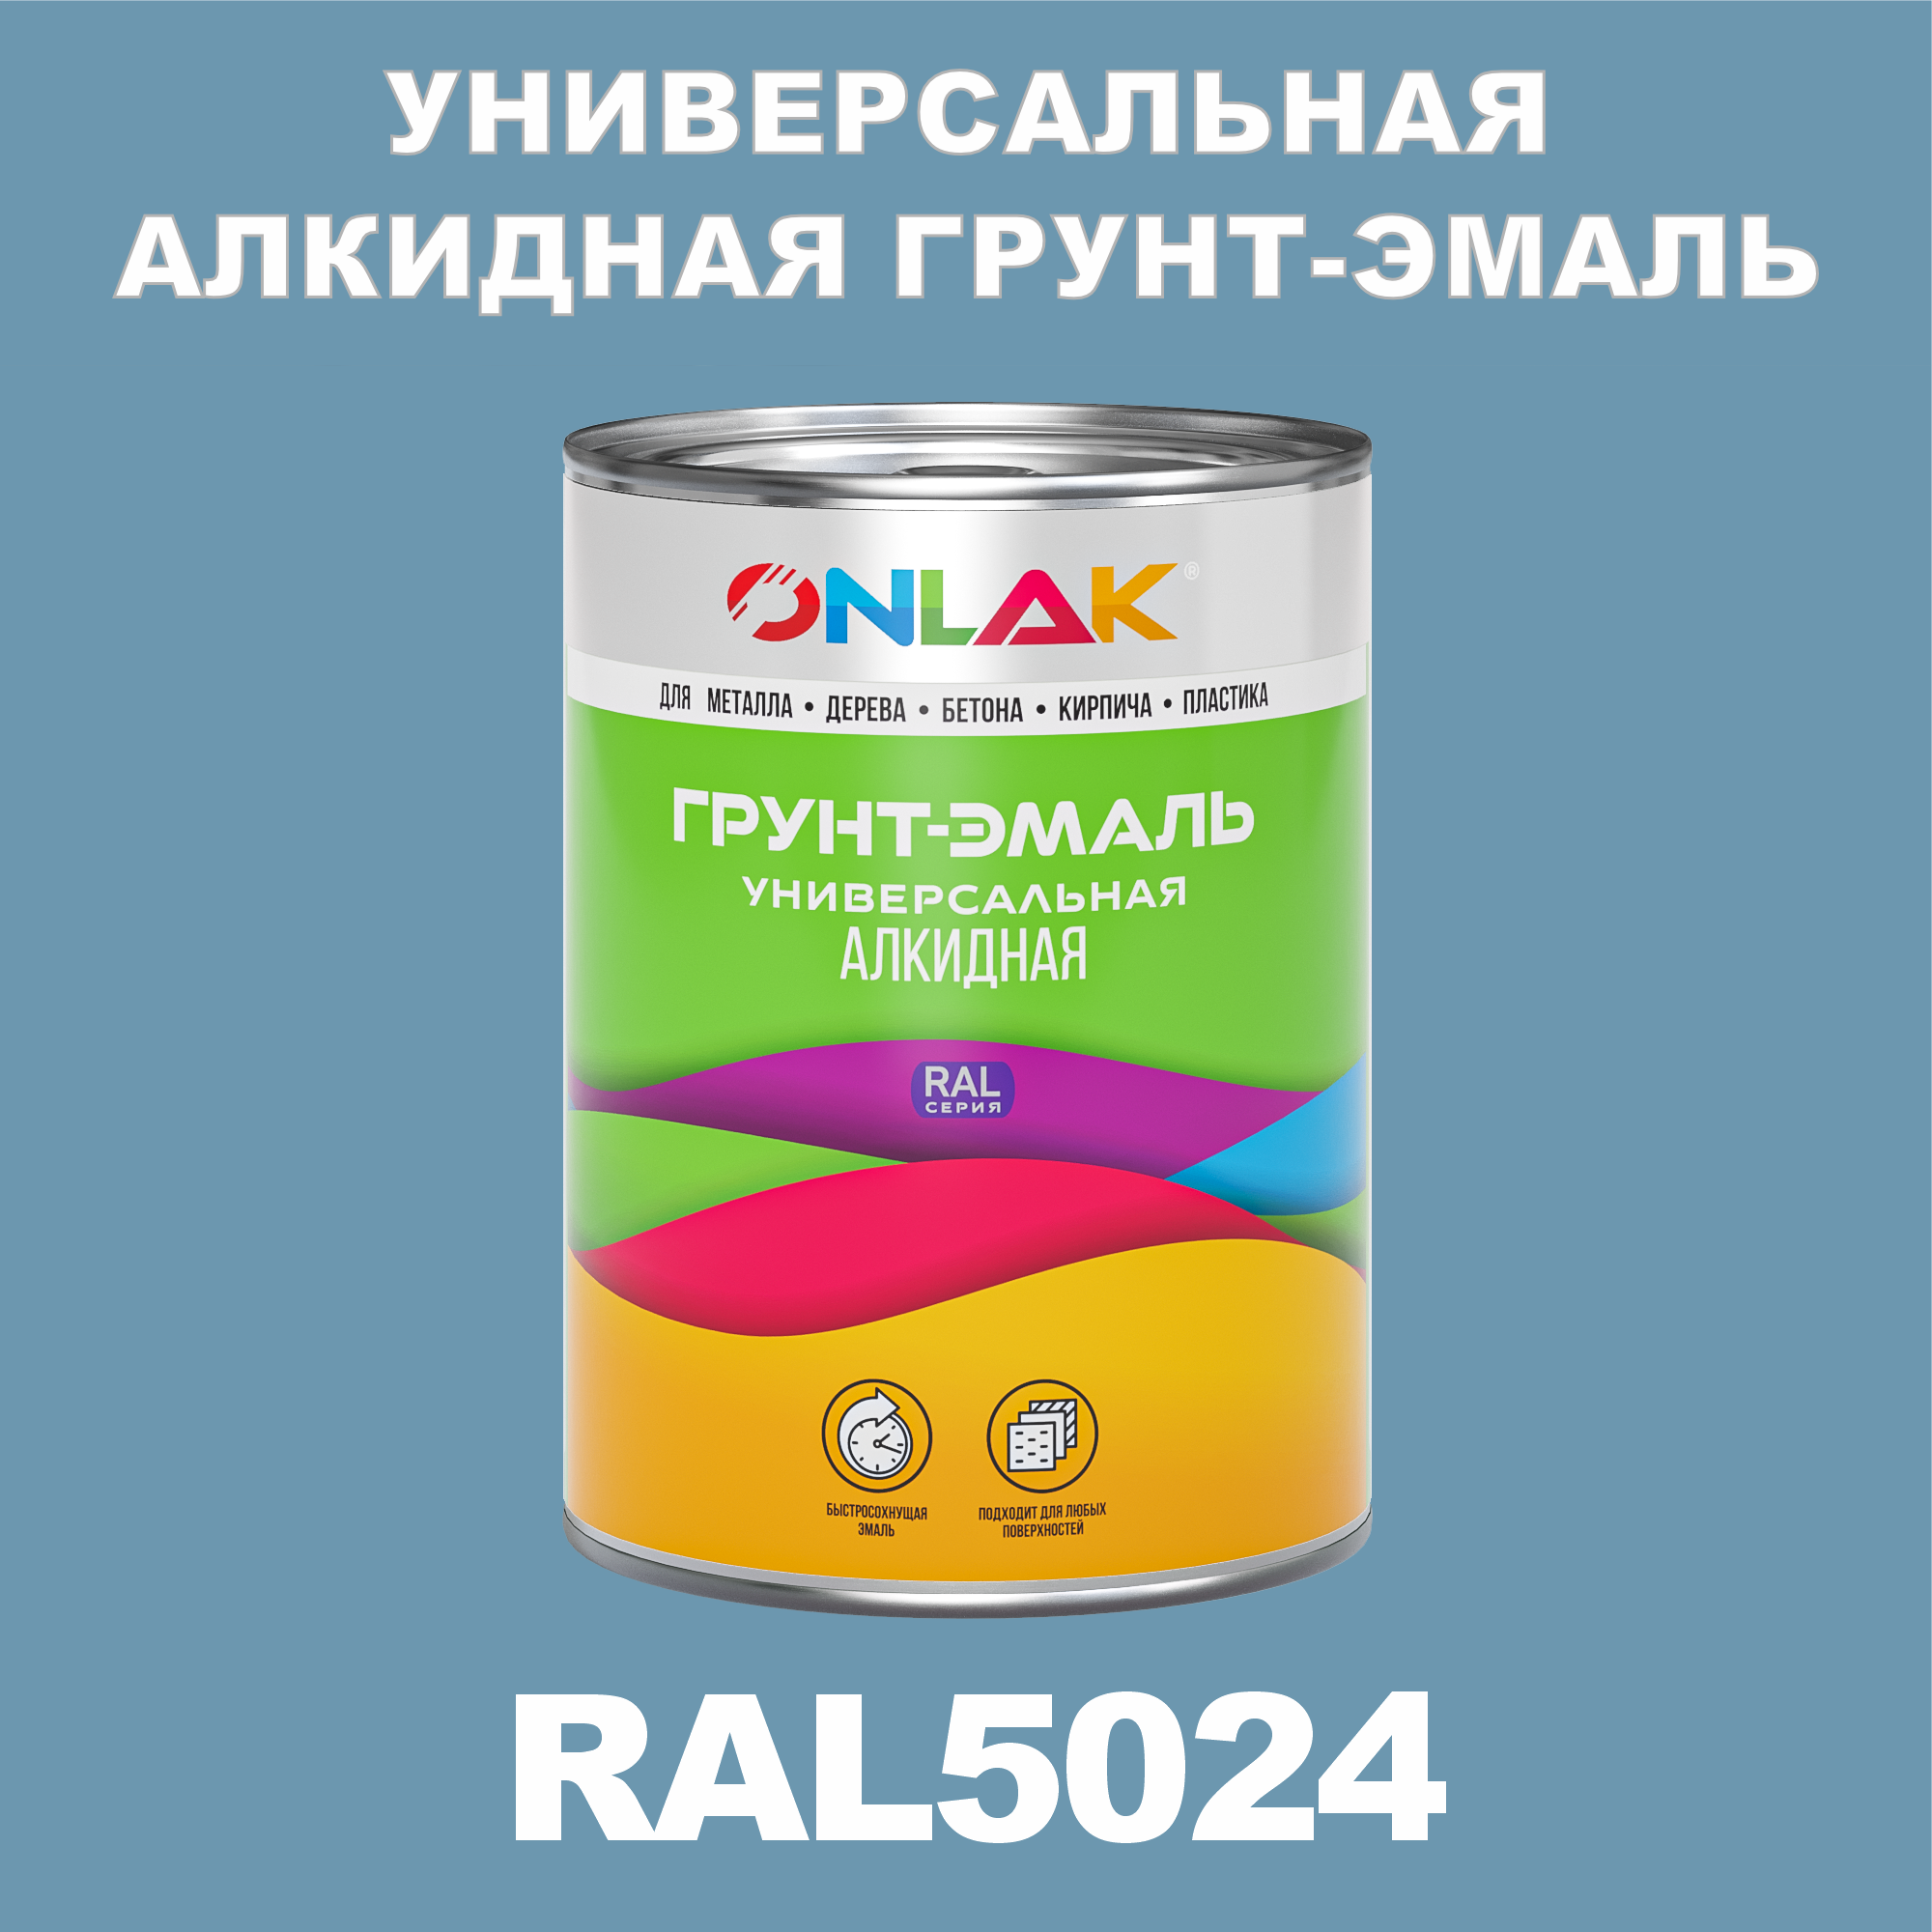 Грунт-эмаль ONLAK 1К RAL5024 антикоррозионная алкидная по металлу по ржавчине 1 кг